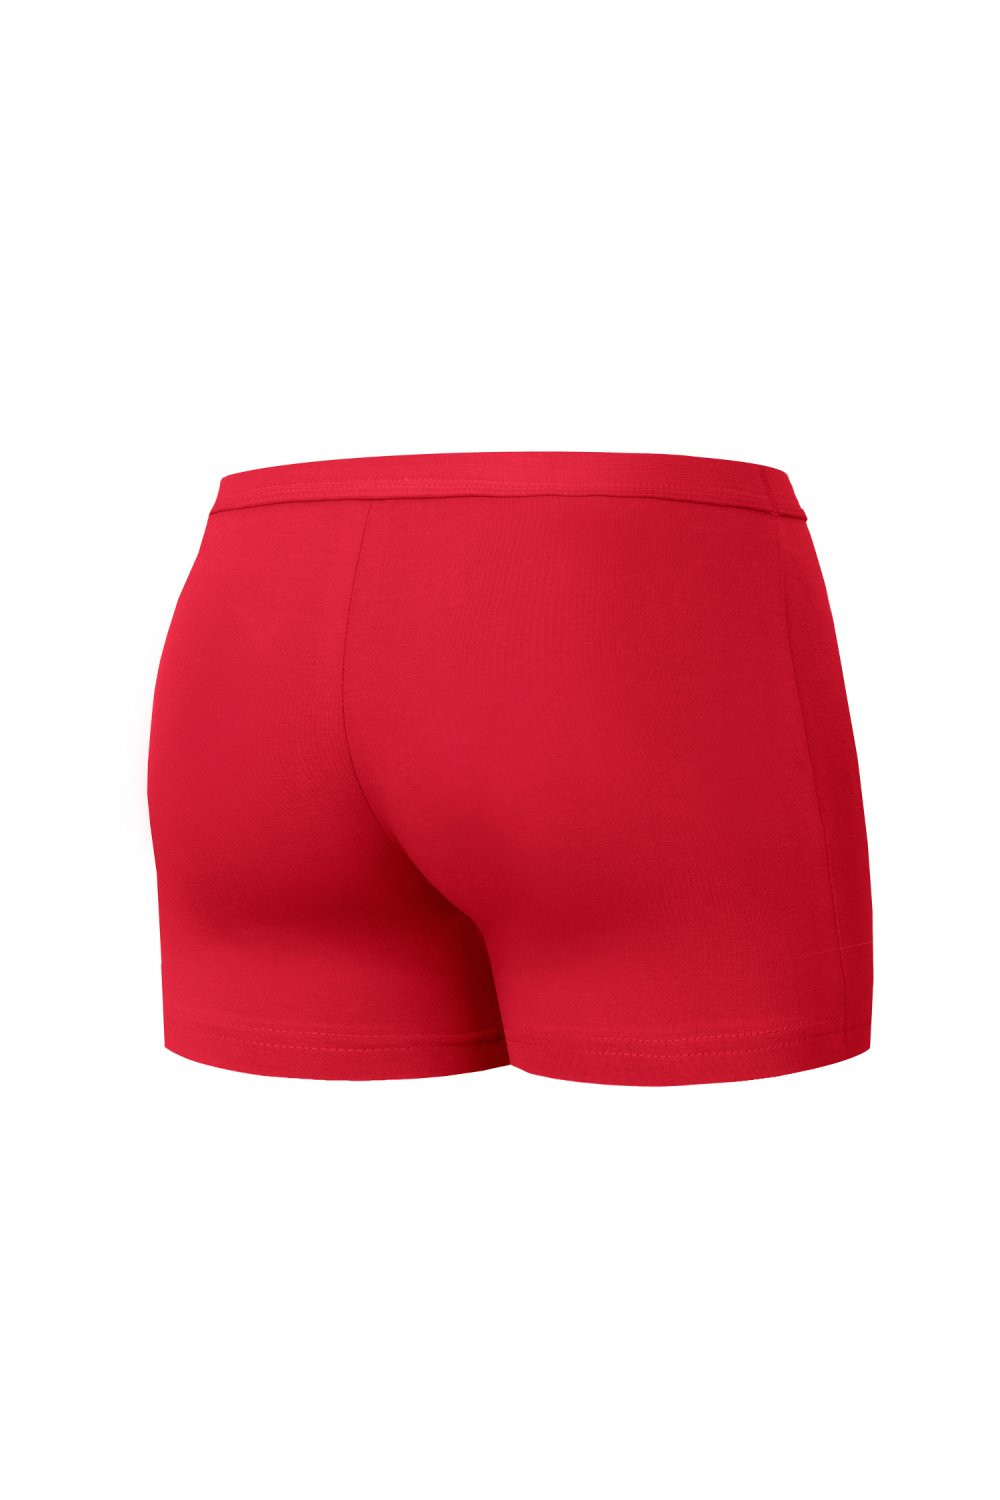 Pánské boxerky 223 Authentic mini red - CORNETTE XL